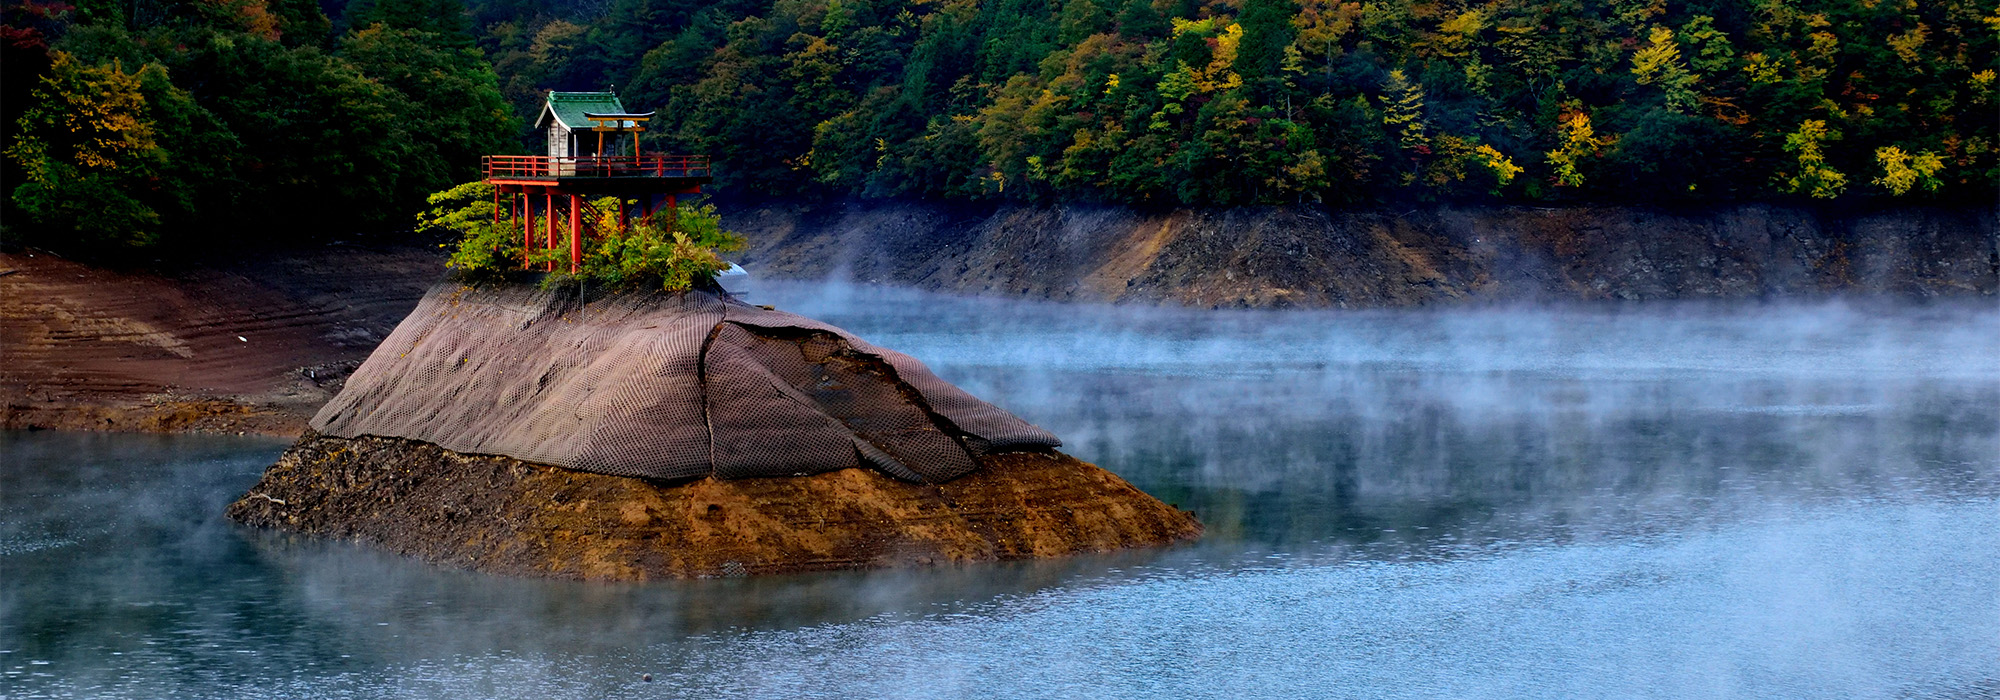 銀山湖の画像